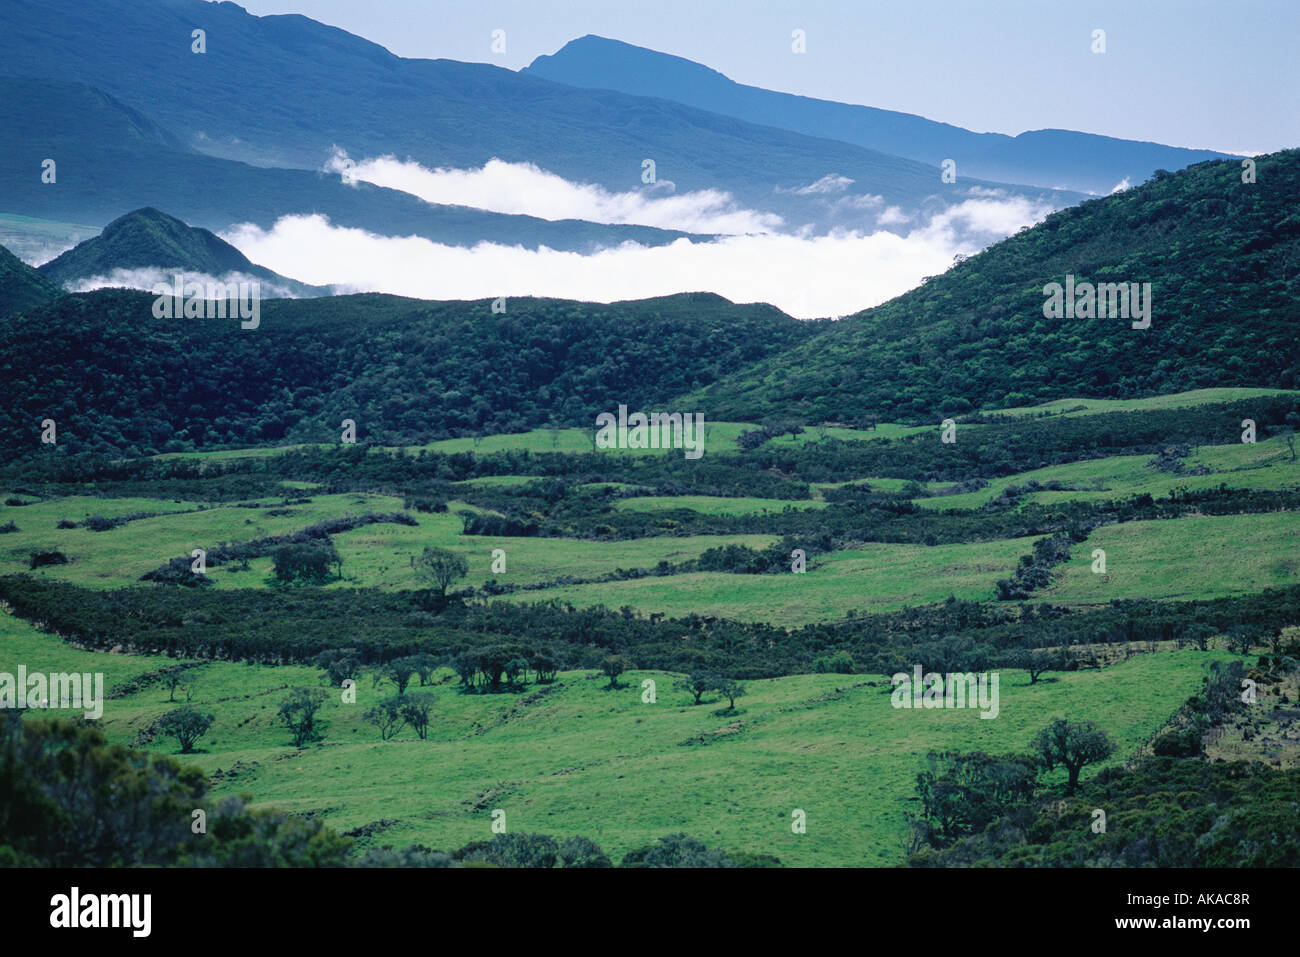 La réunion, les nuages de basse altitude dans un paysage montagneux Banque D'Images